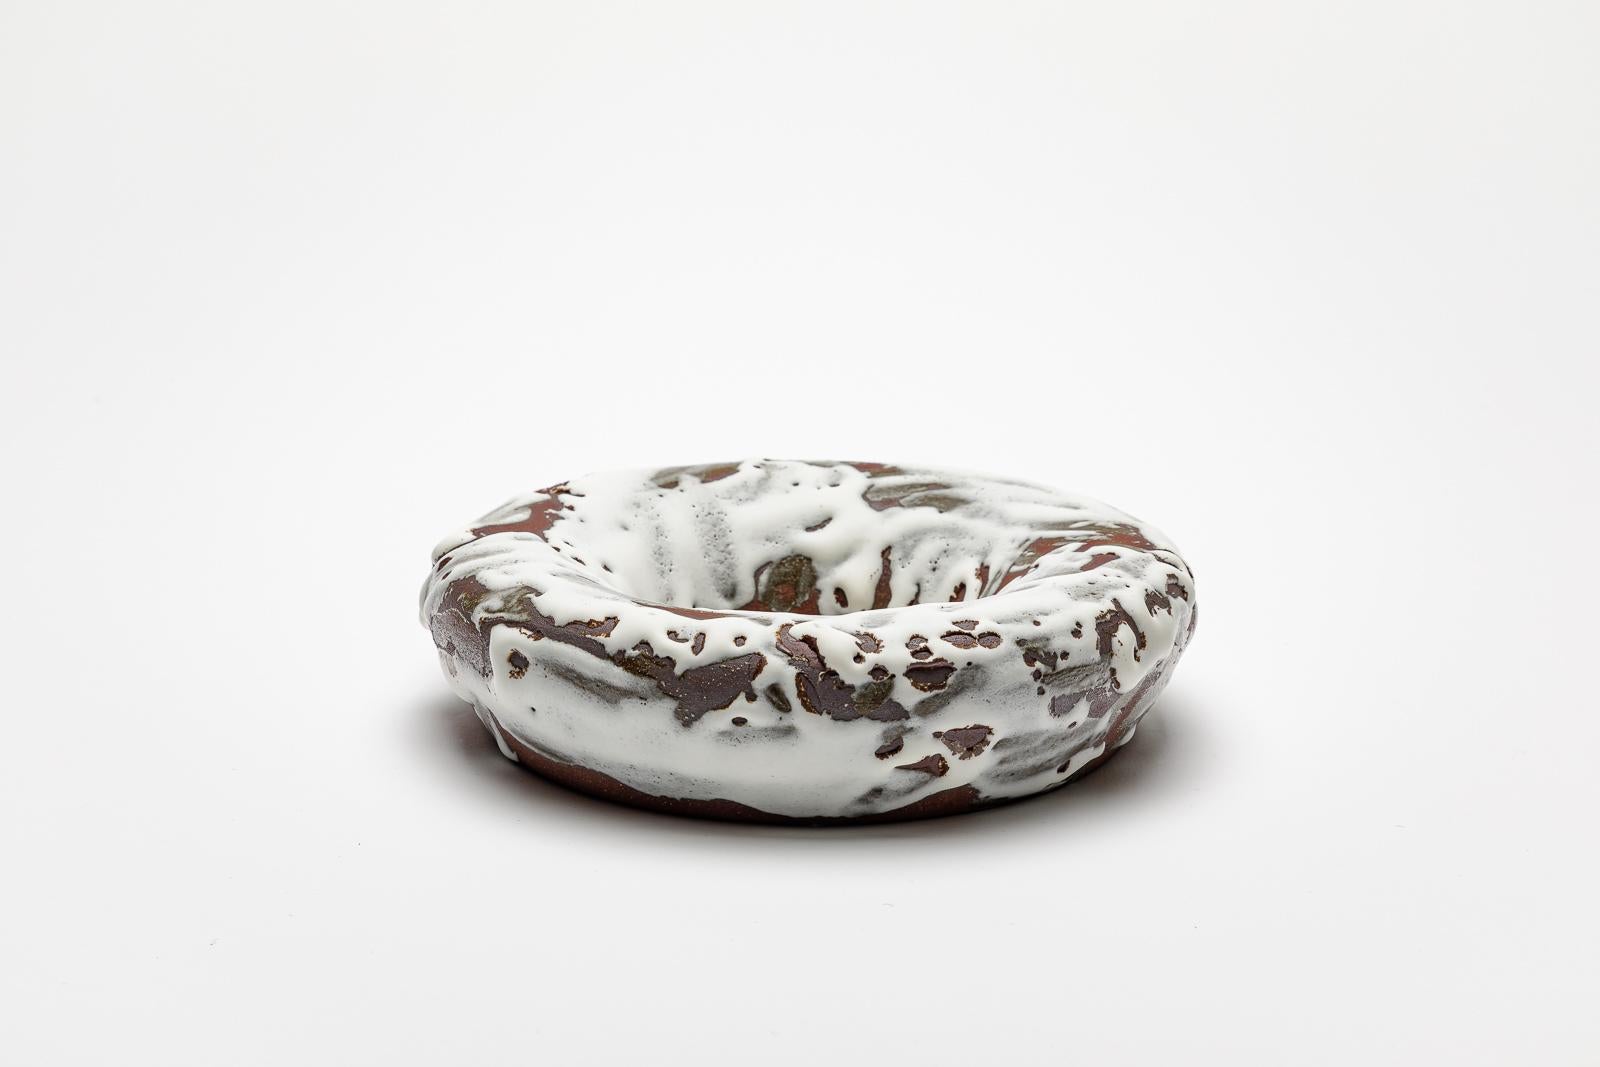 Weiß und braun glasierter Keramikspiegel von Mia Jensen.
Künstlersignatur unter dem Sockel. CIRCA 2023-2024.
H : 1,8' x 7,5' Zoll.
